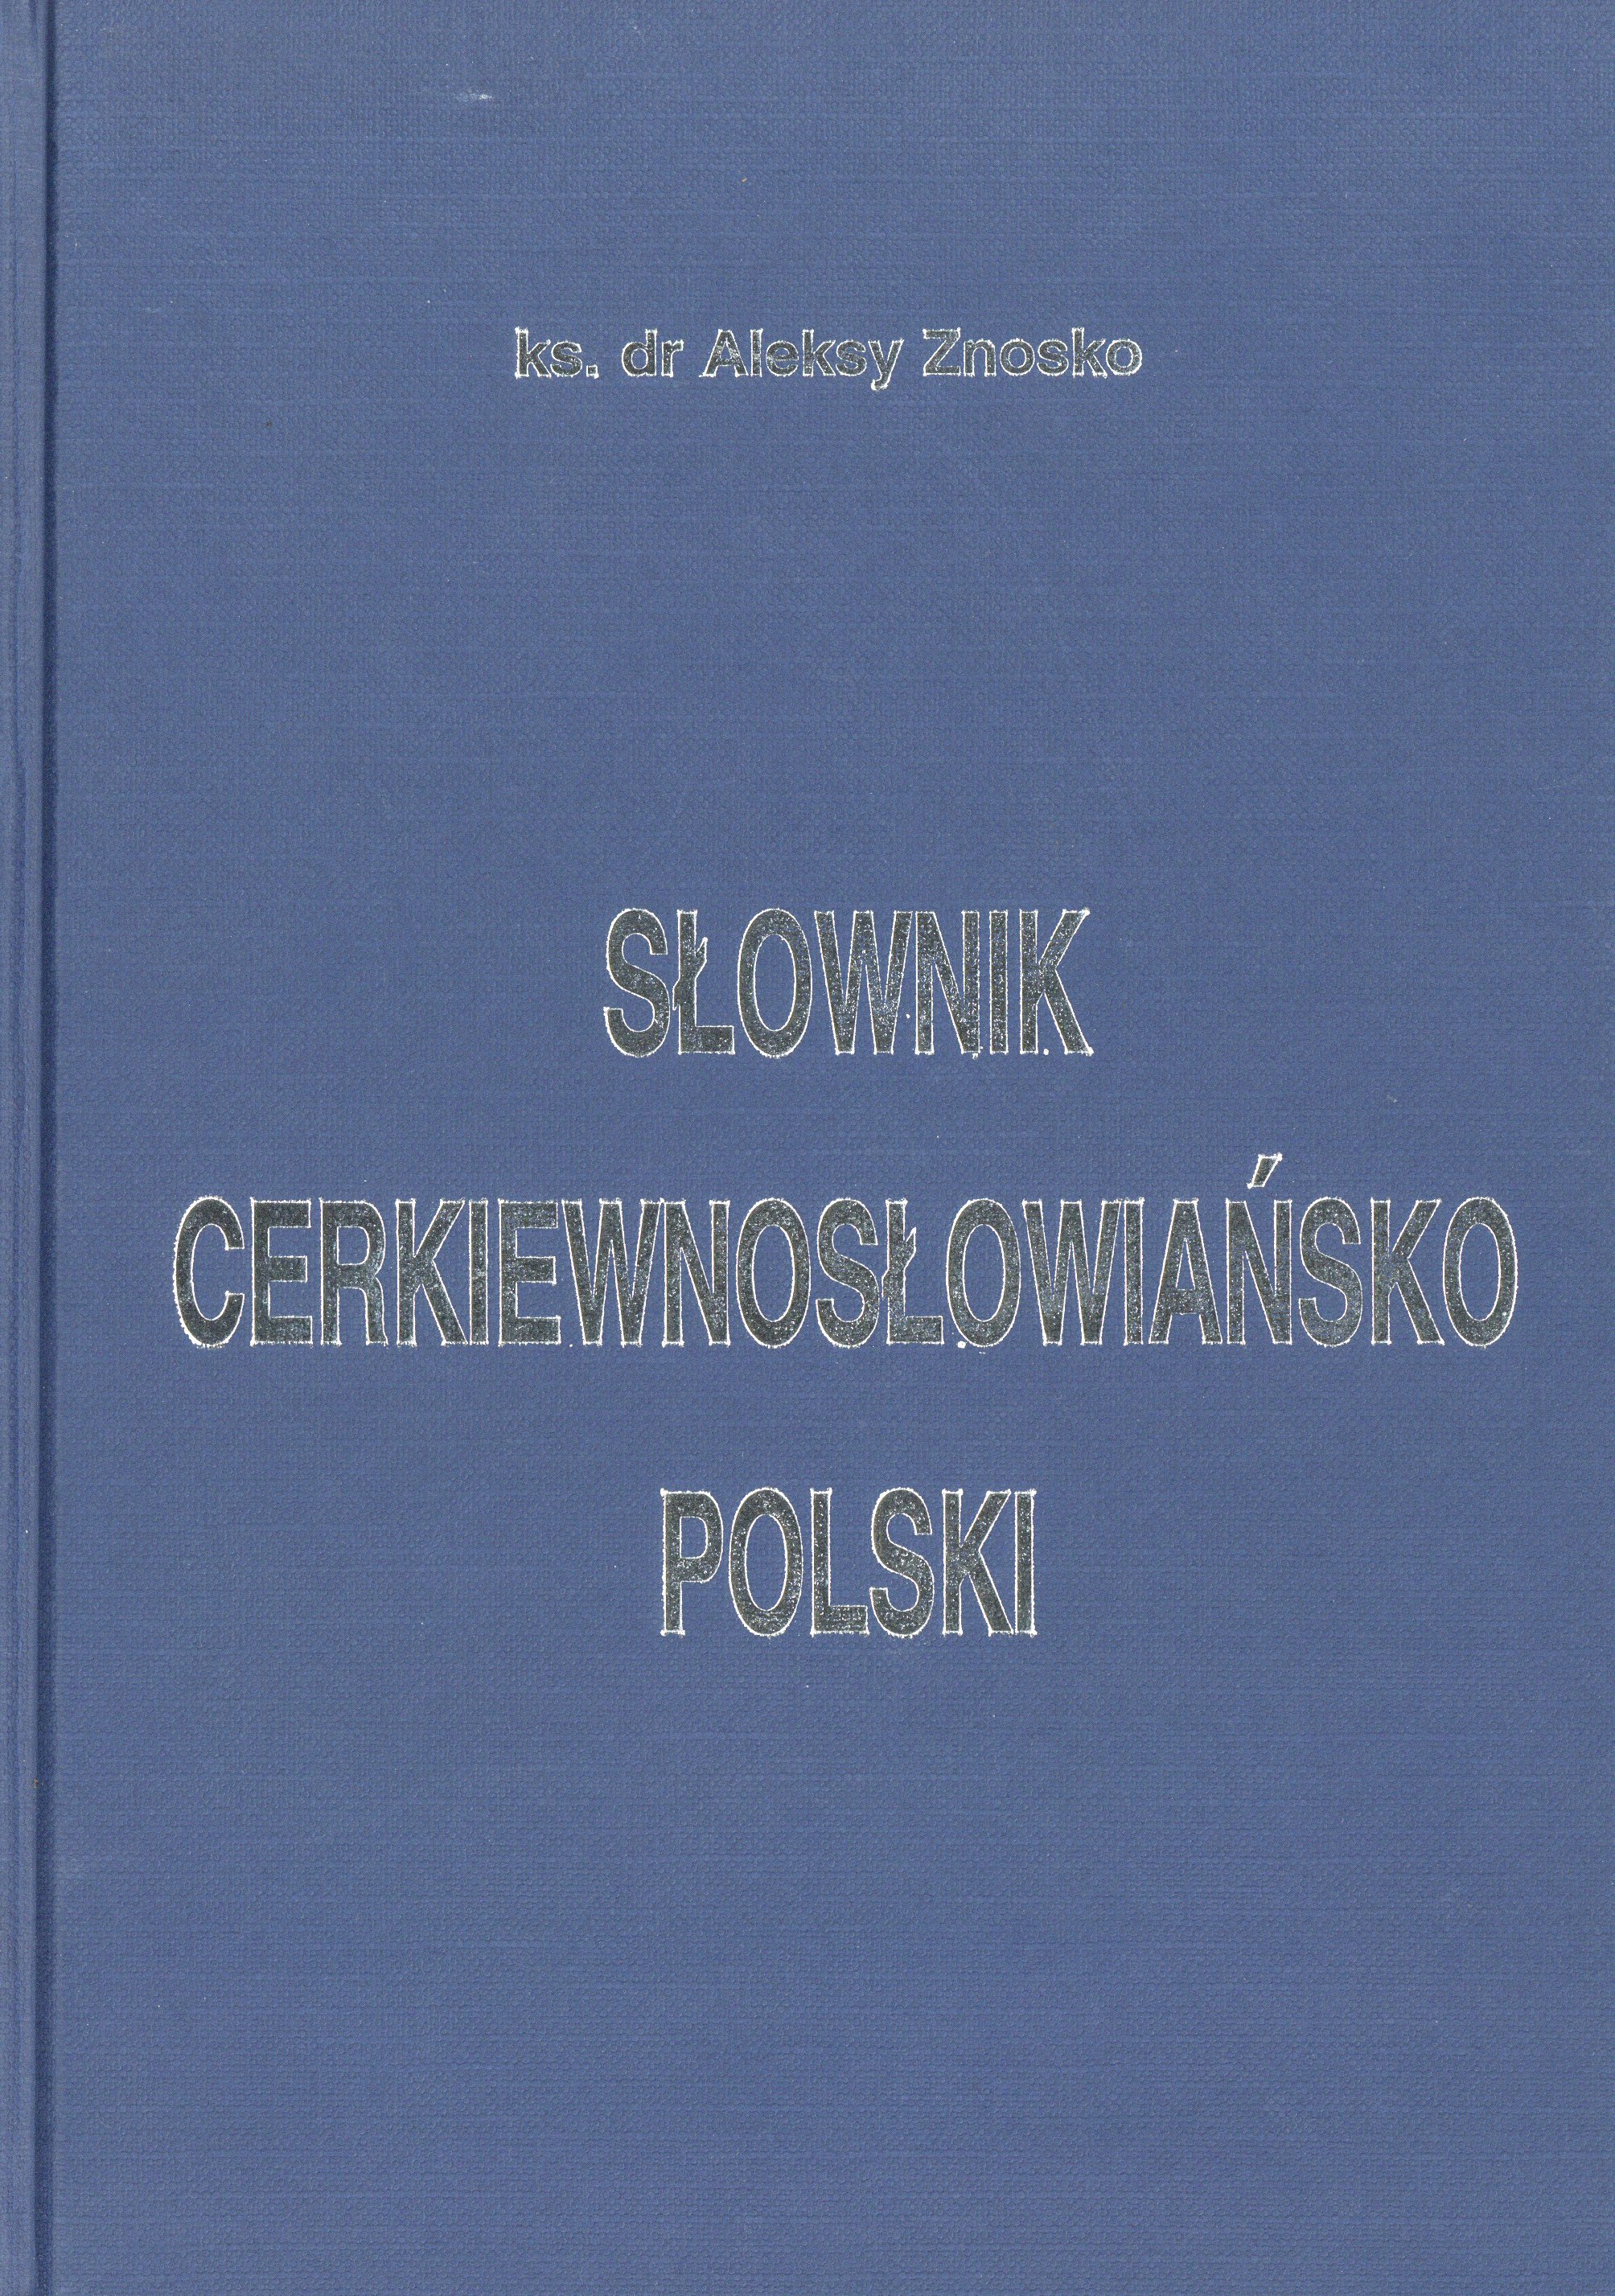 Słownik cerkiewnosłowiańsko-polski